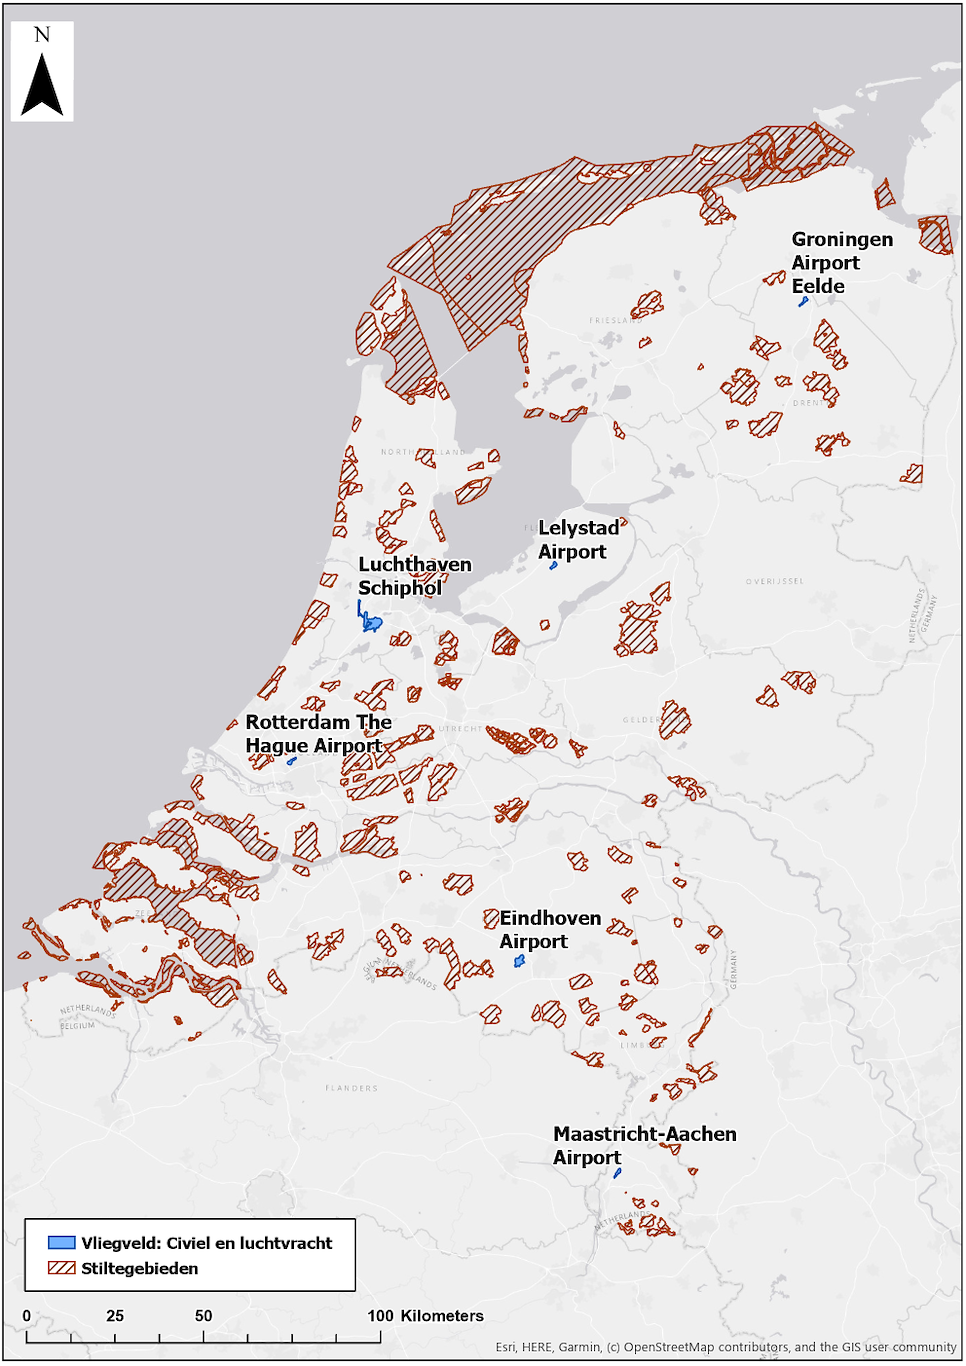 Stiltegebieden in Nederland (Bron: Atlas van de Leefomgeving, 2019, Stiltegebieden)